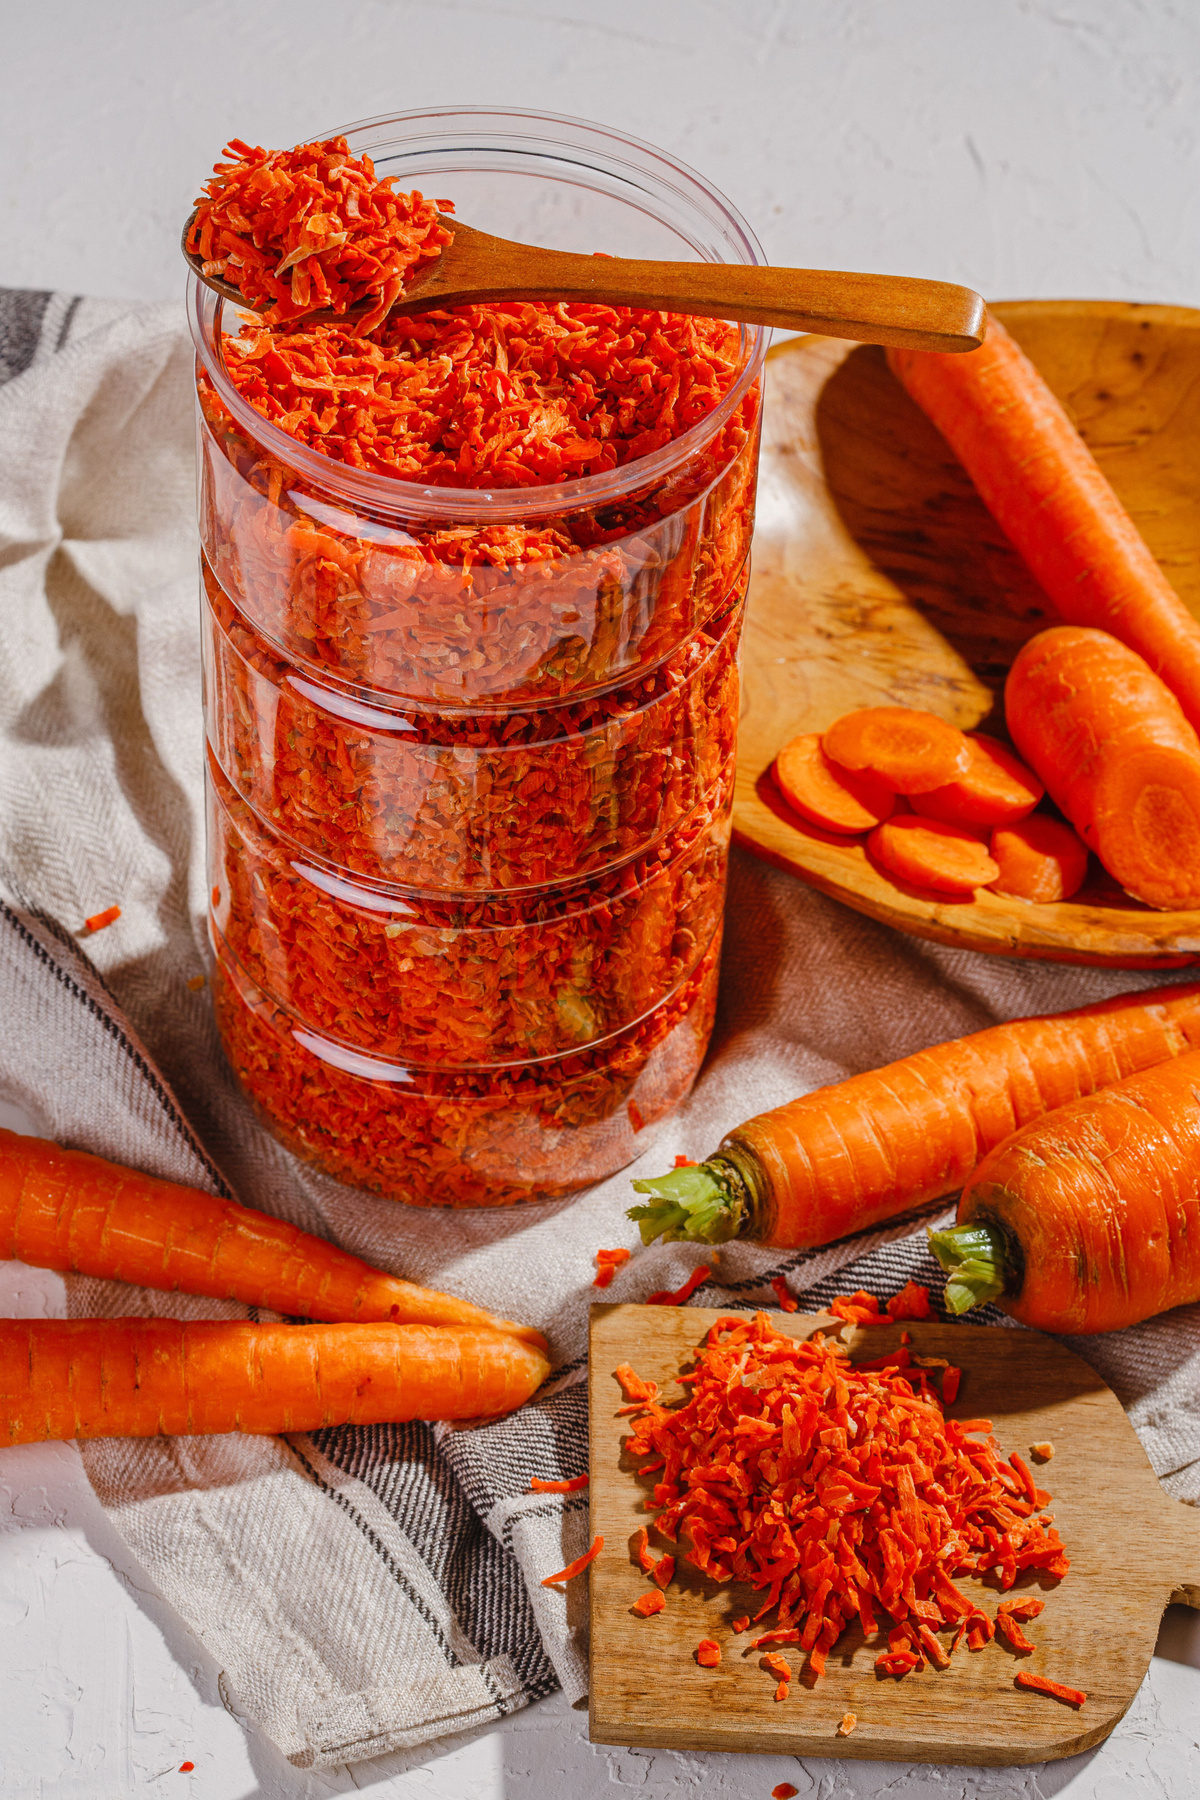 Pirina ECO / Морковь сушеная 750г / Соломка / Овощи сушеные / Заправка для супа / Приправы и специи